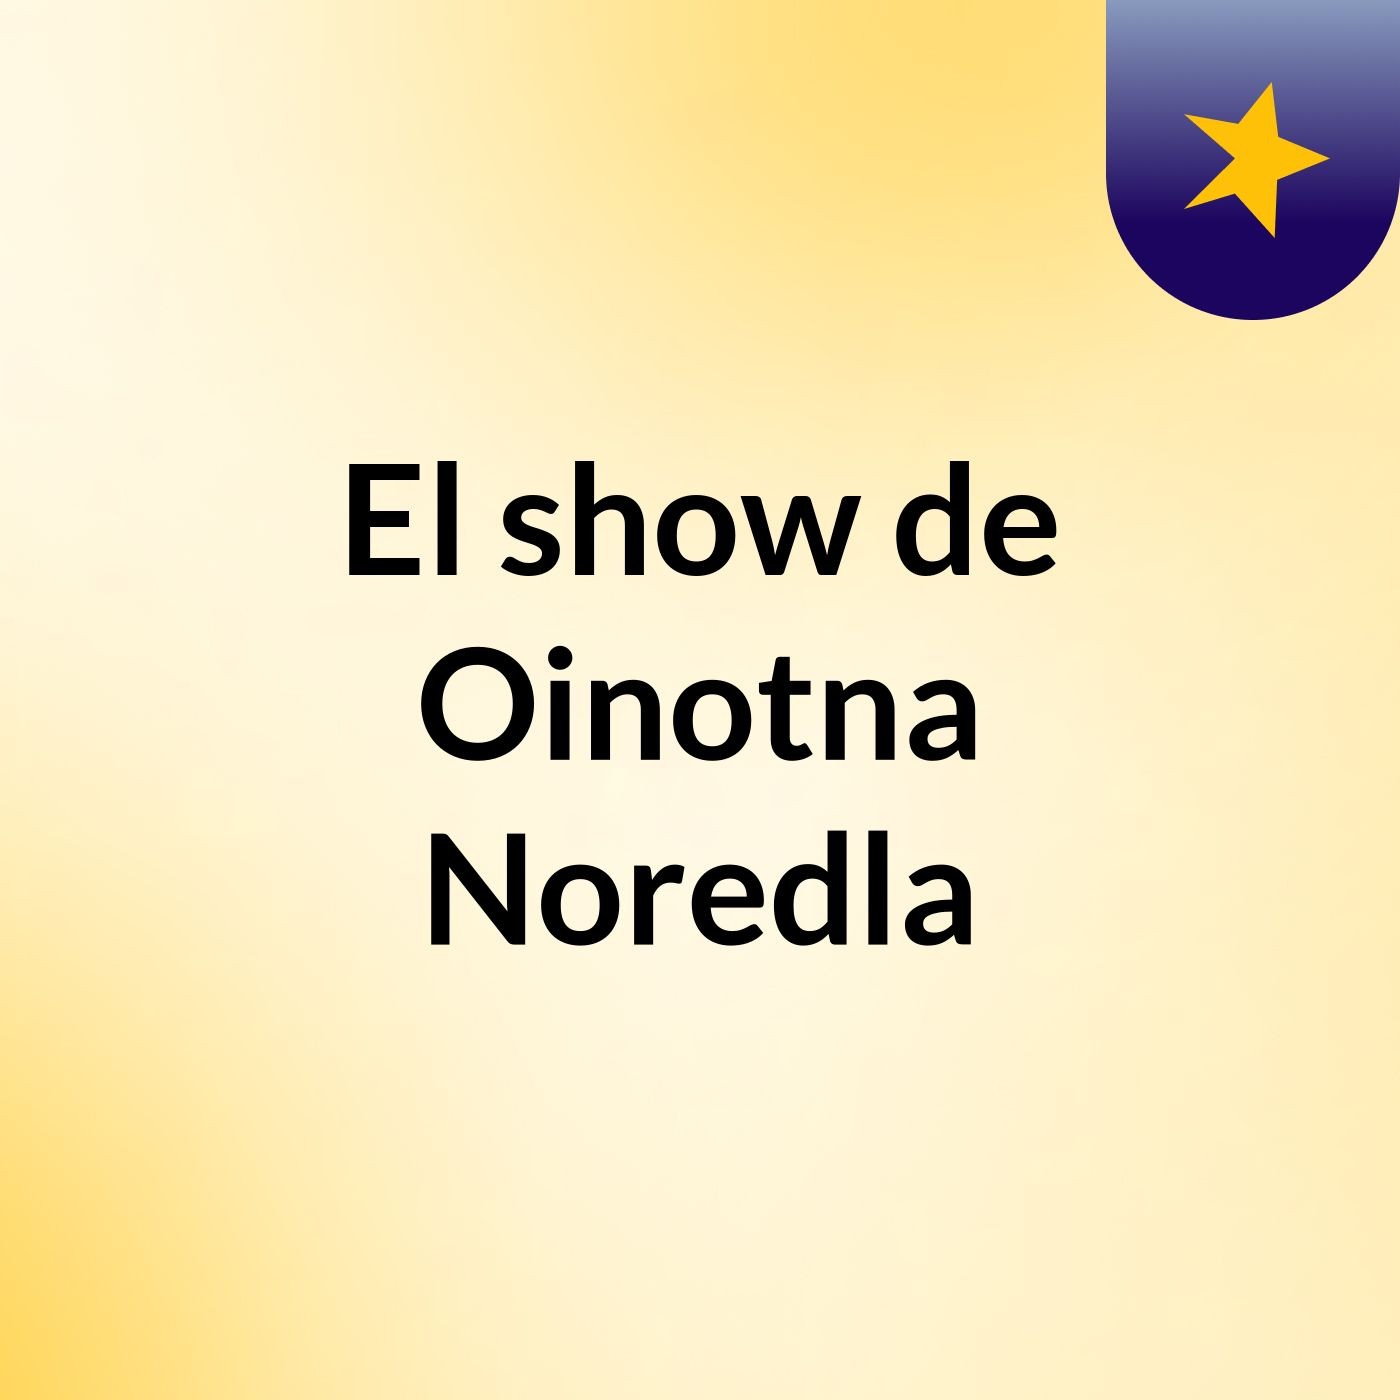 El show de Oinotna Noredla